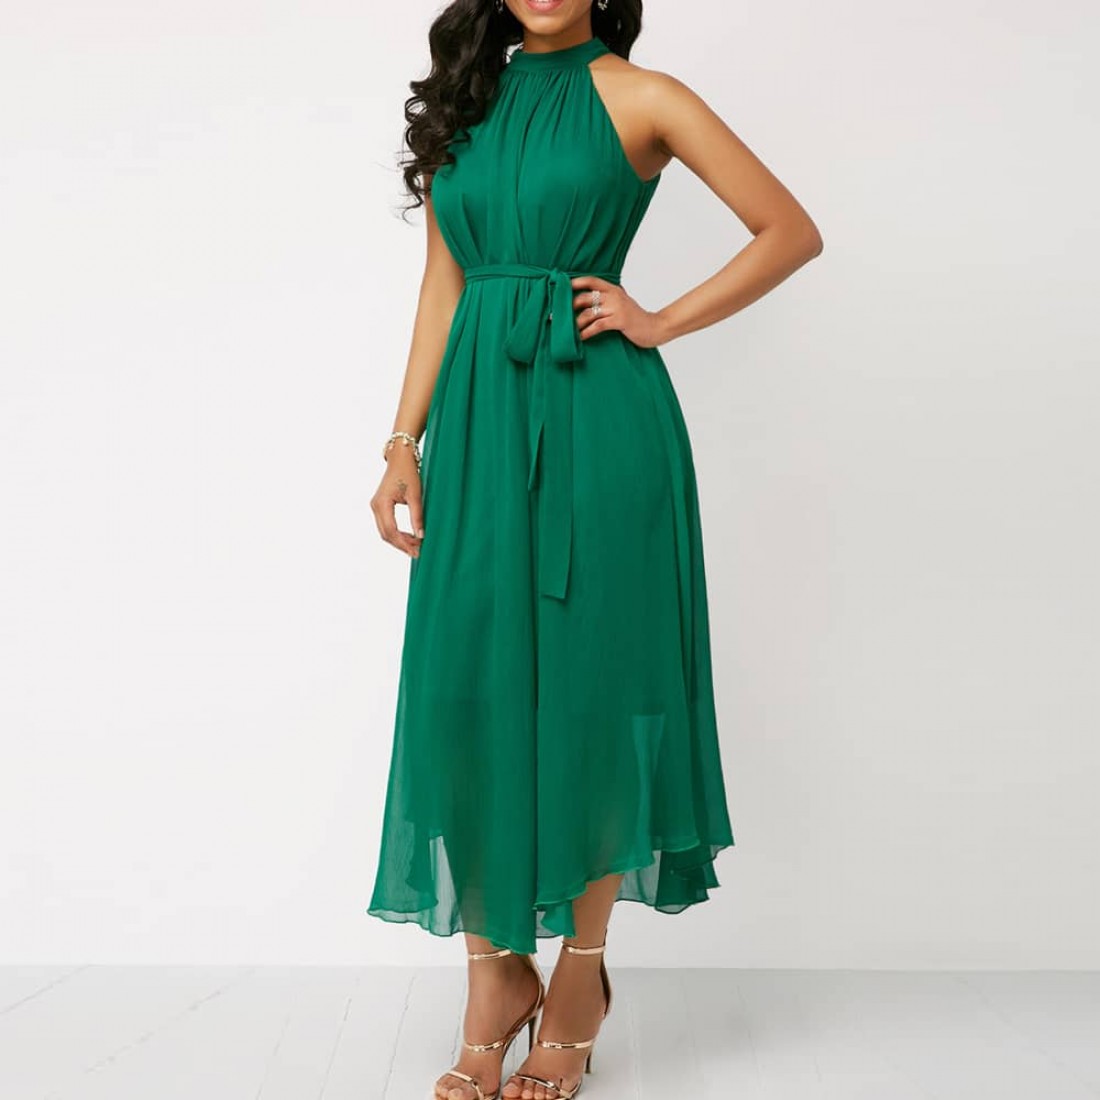 Buy Chiffon Pleated Halter Neck Sleeveless Maxi Dress Green